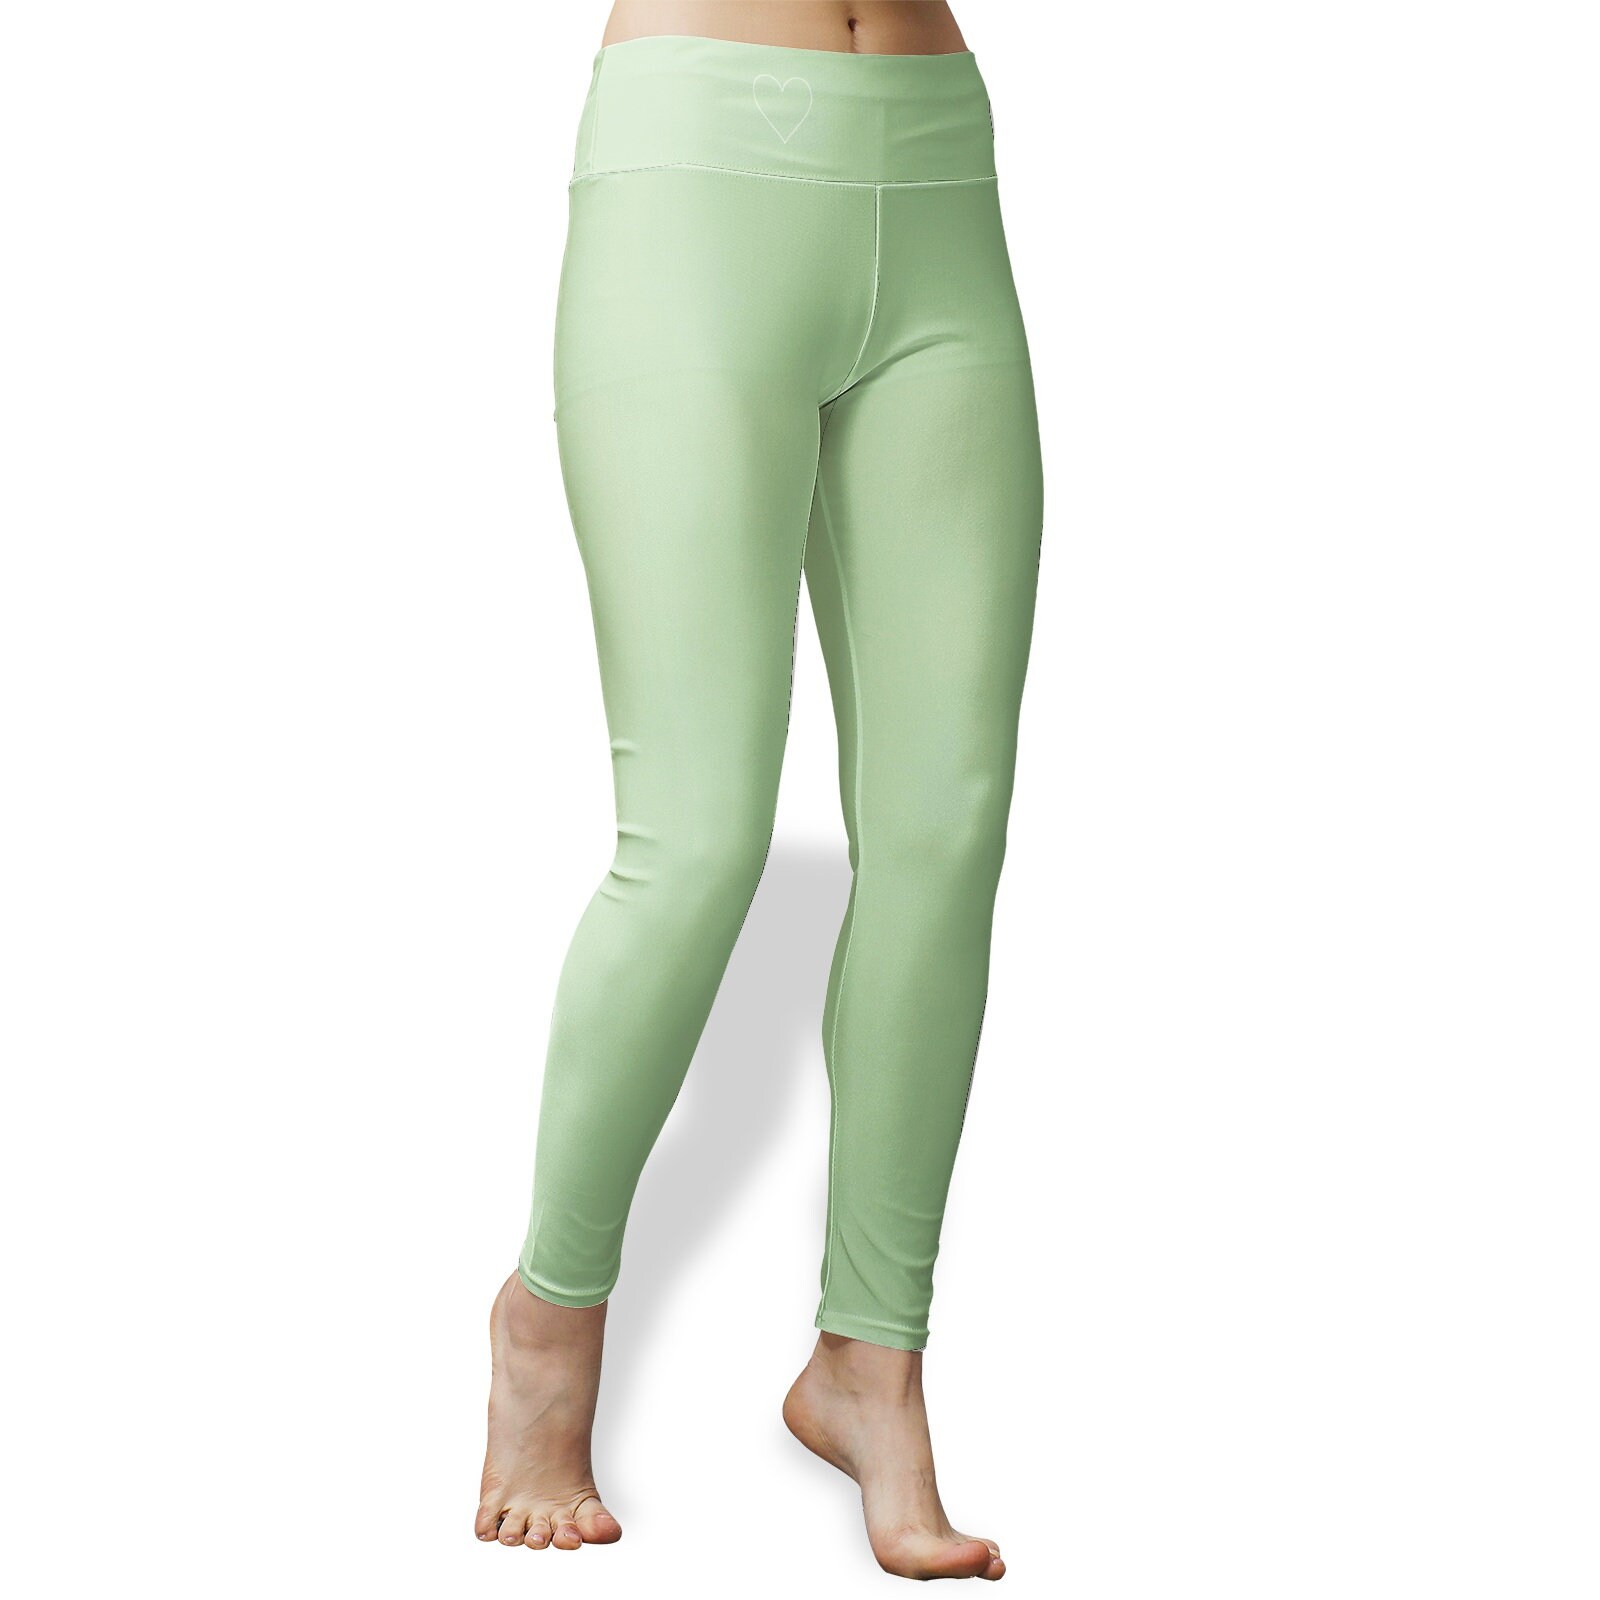 Green Yoga Leggings Women's High Waist Yoga Leggings